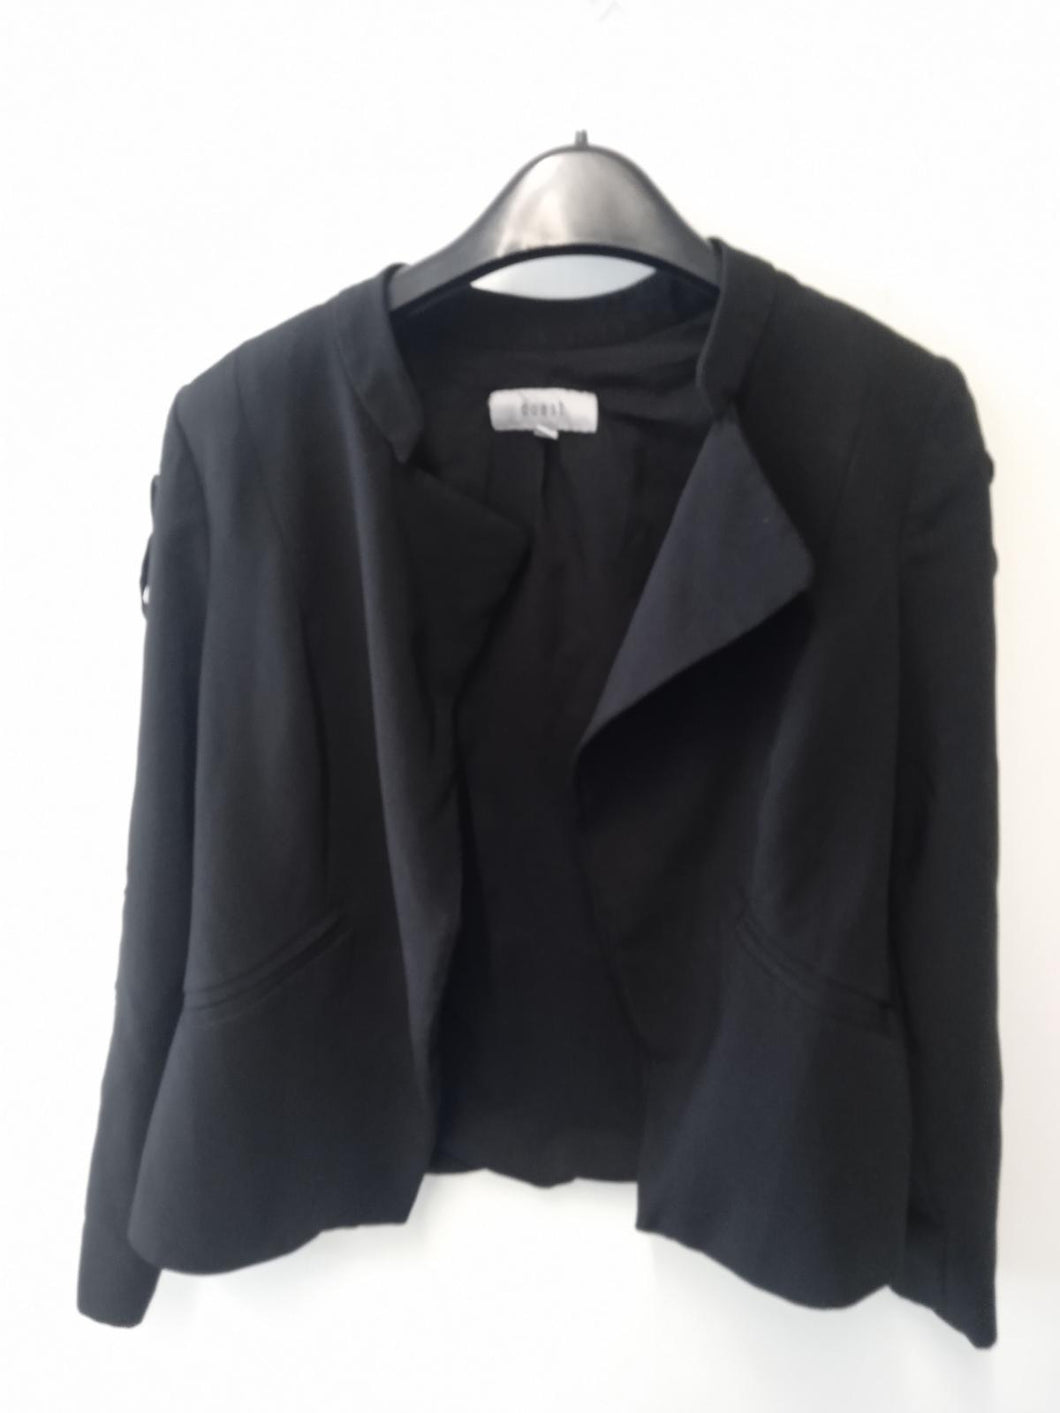 COAST Ladies Black Collared Long Sleeve Blazer Size UK12